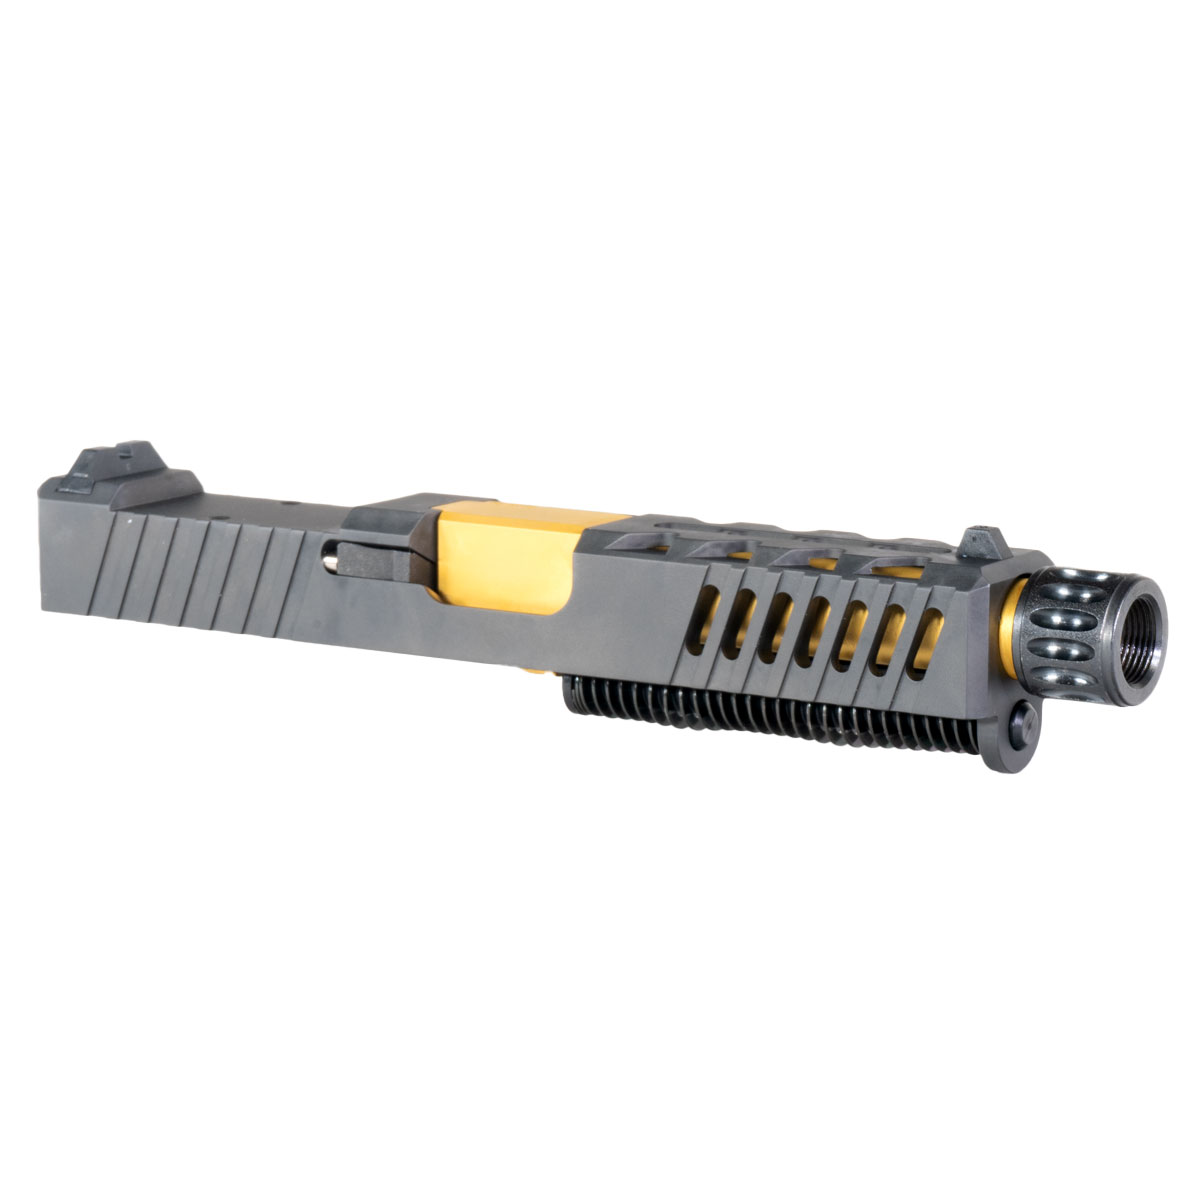 DTT 'Aufschwung' 9mm Complete Slide Kit - Glock 19 Gen 1-3 Compatible